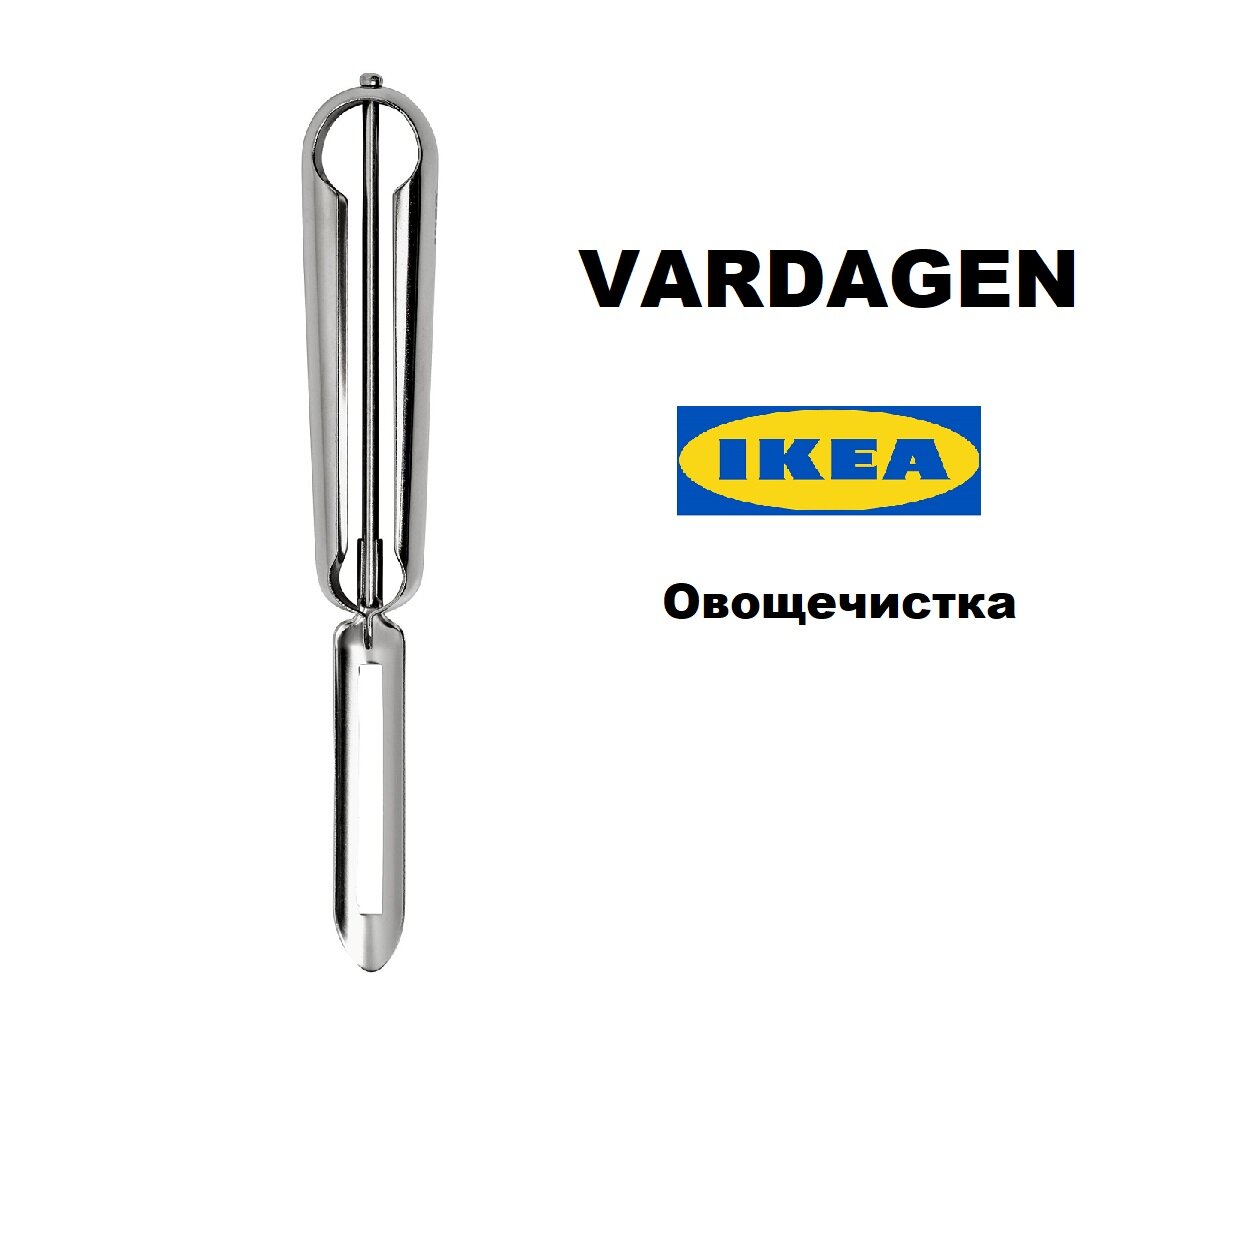 Икеа вардаген, овощечистка (Ikea Vardagen)